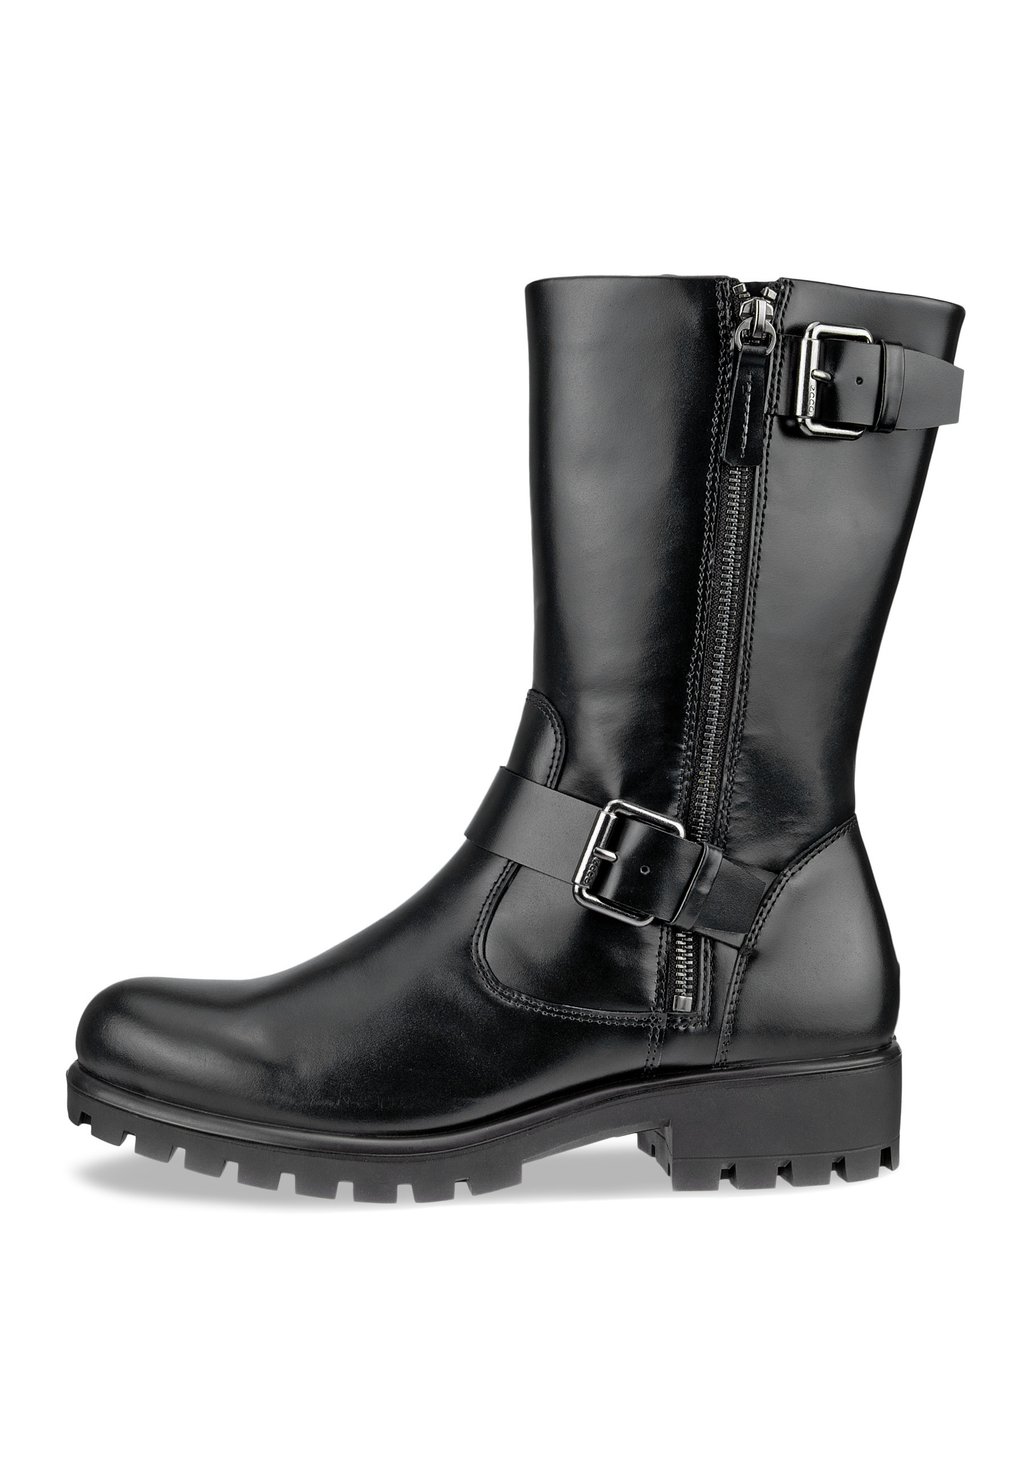 Техасские/байкерские ботинки Modtray W ECCO, черный ботинки высокие ecco modtray w коричневый 36 размер